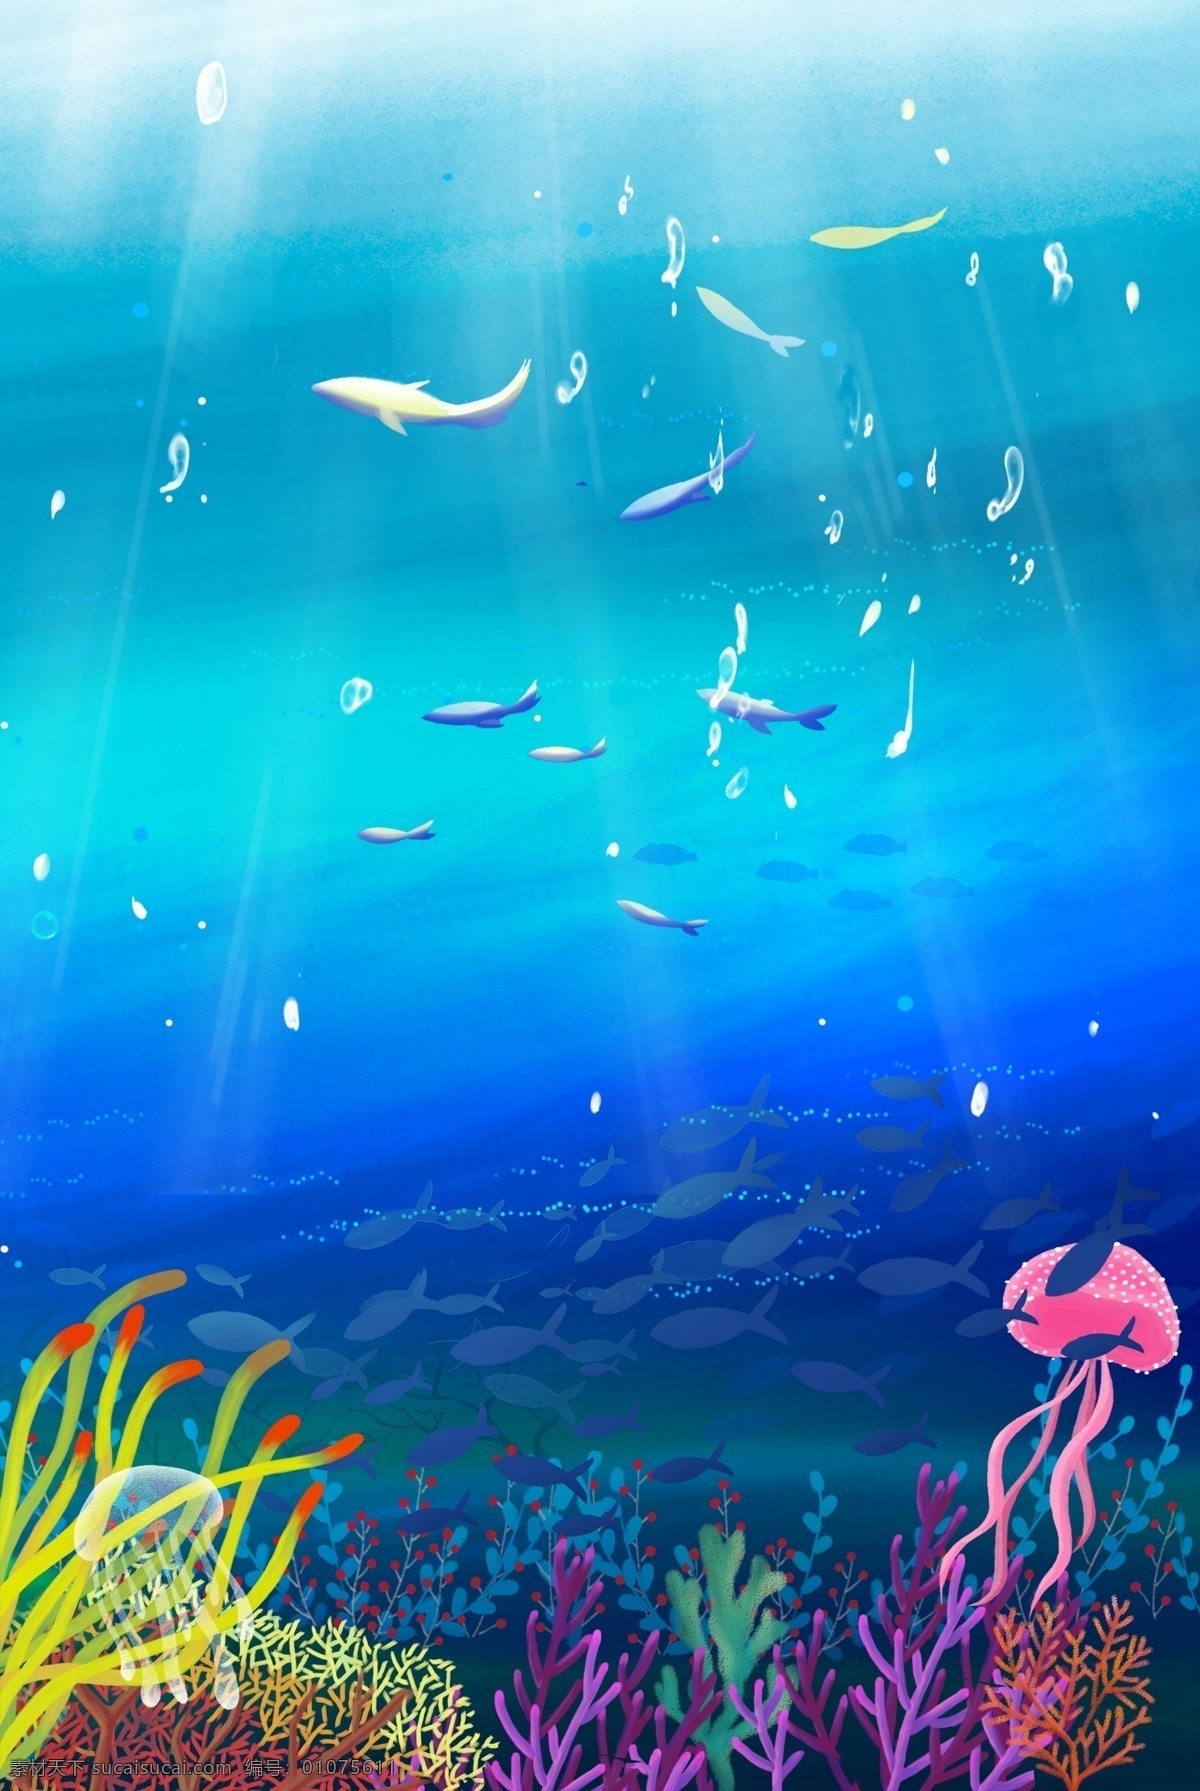 奇妙 蓝色 海底 世界 鱼群 海洋 深海 海豚 小鱼 大鱼 奇幻